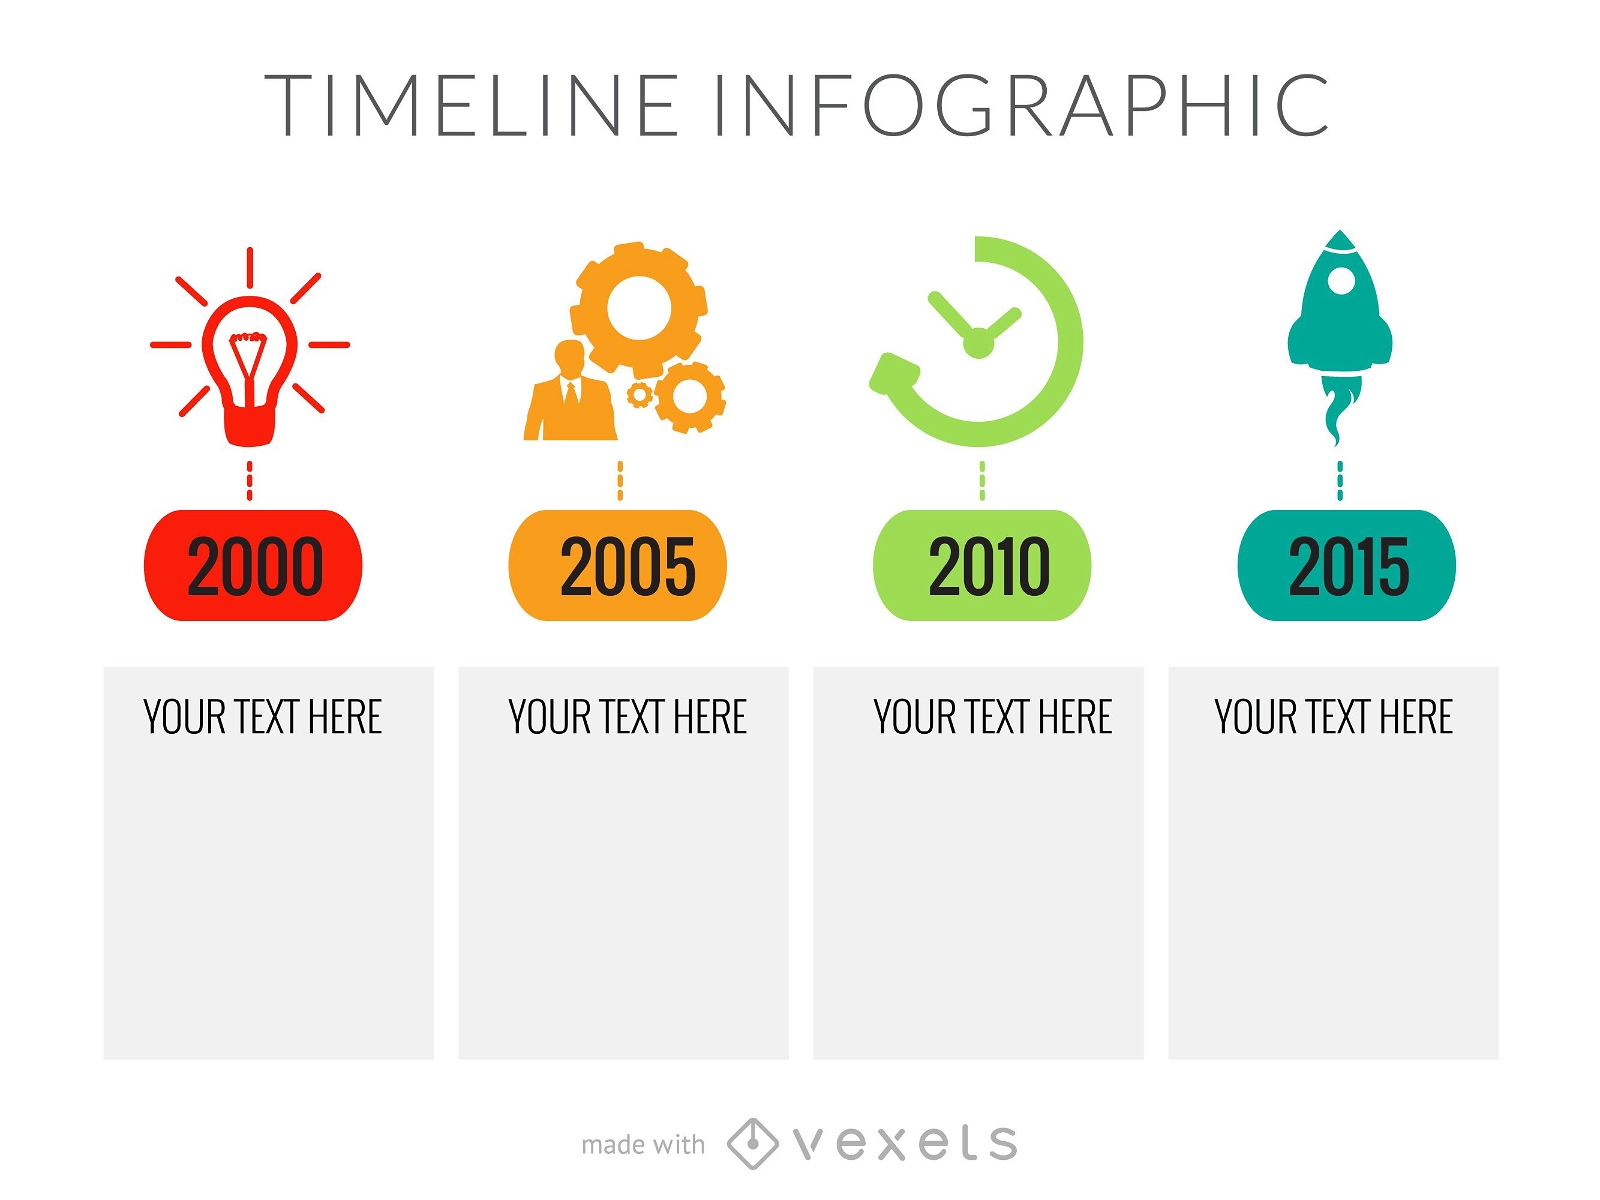 Starten Sie den Timeline Infographic Maker